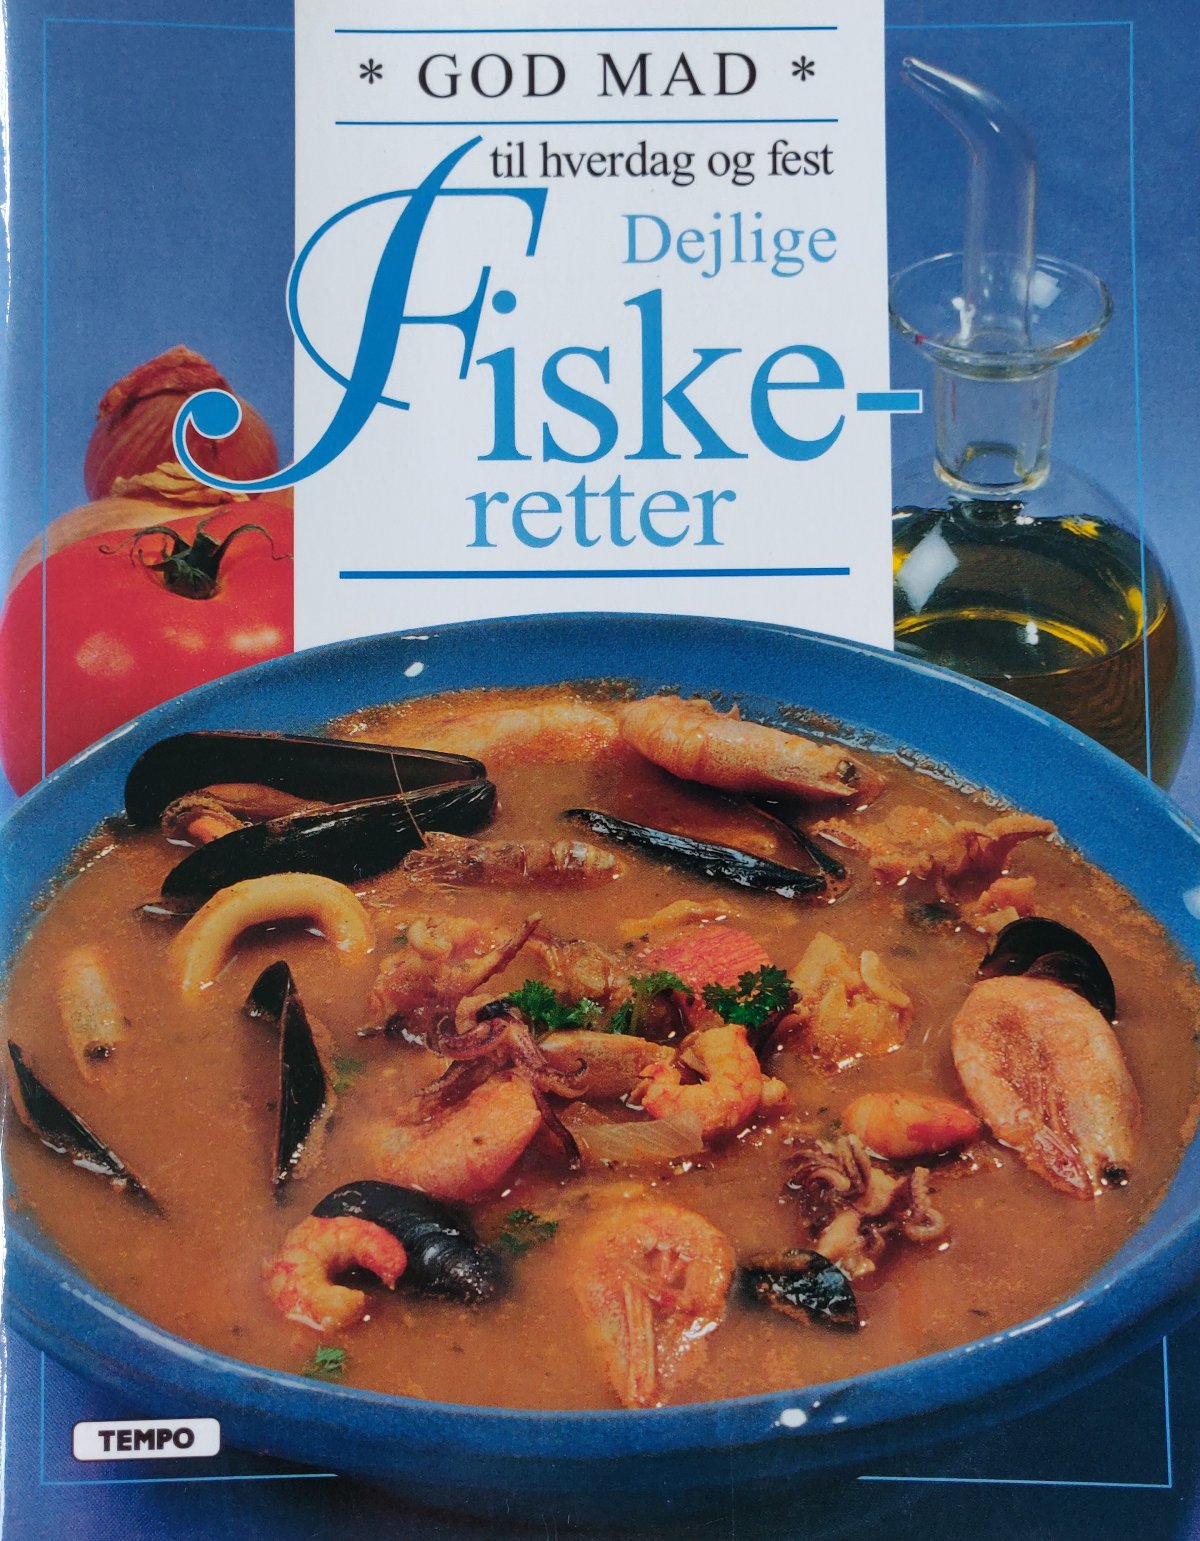 mad til hverdag og - dejlige fiskeretter - Antikvariske kogebøger - fisk, svampe m.m. - Bogjagt.dk